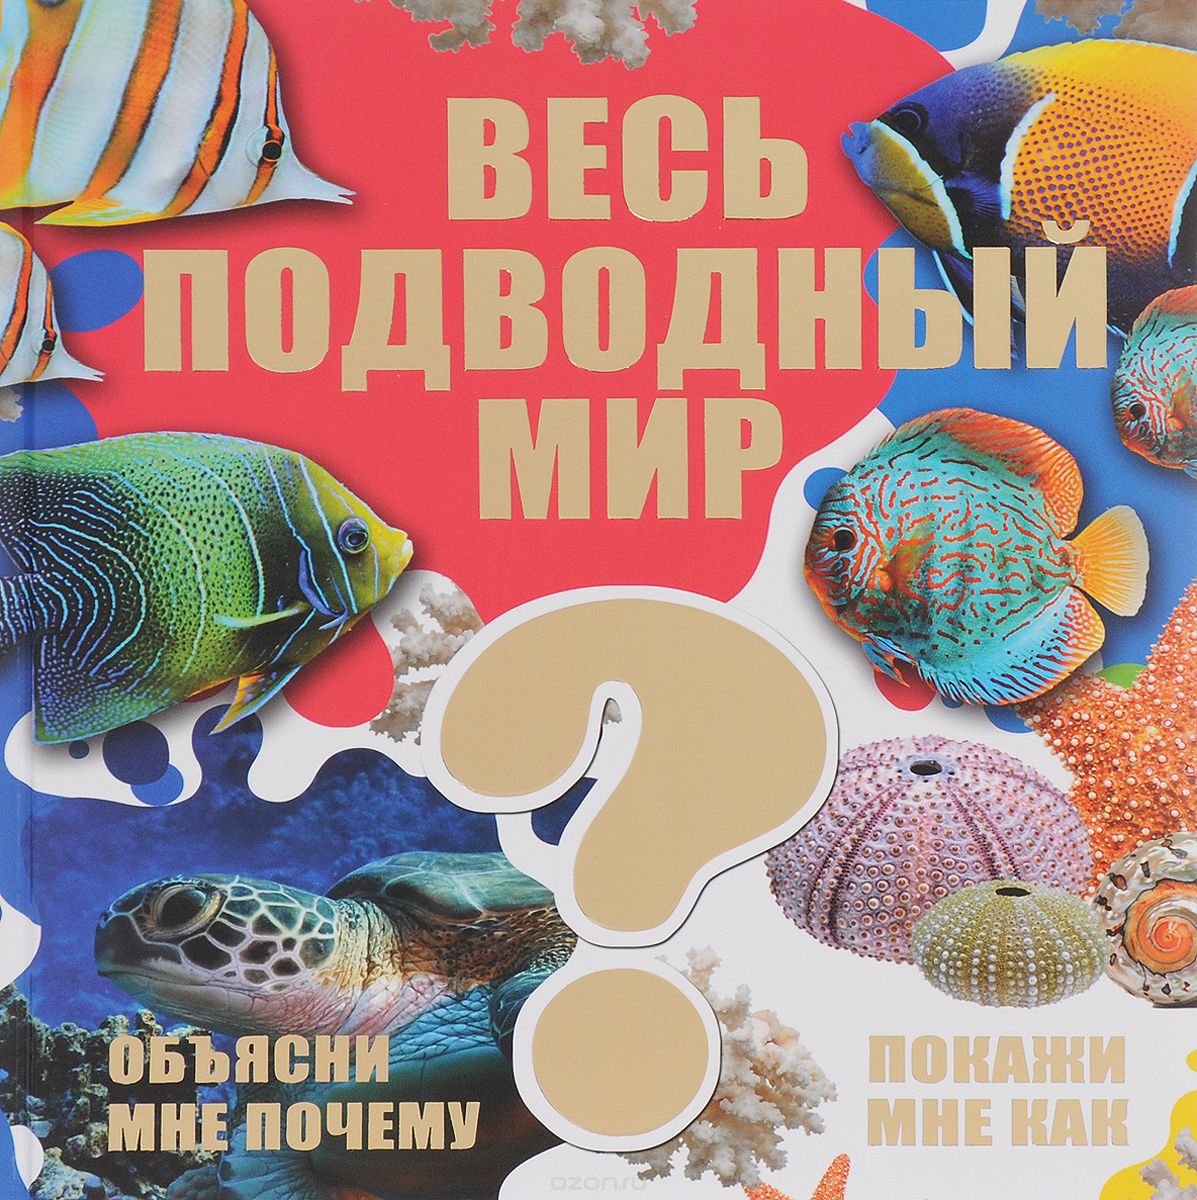 Весь подводный мир, Д. В. Кошевар, В. В. Ликсо